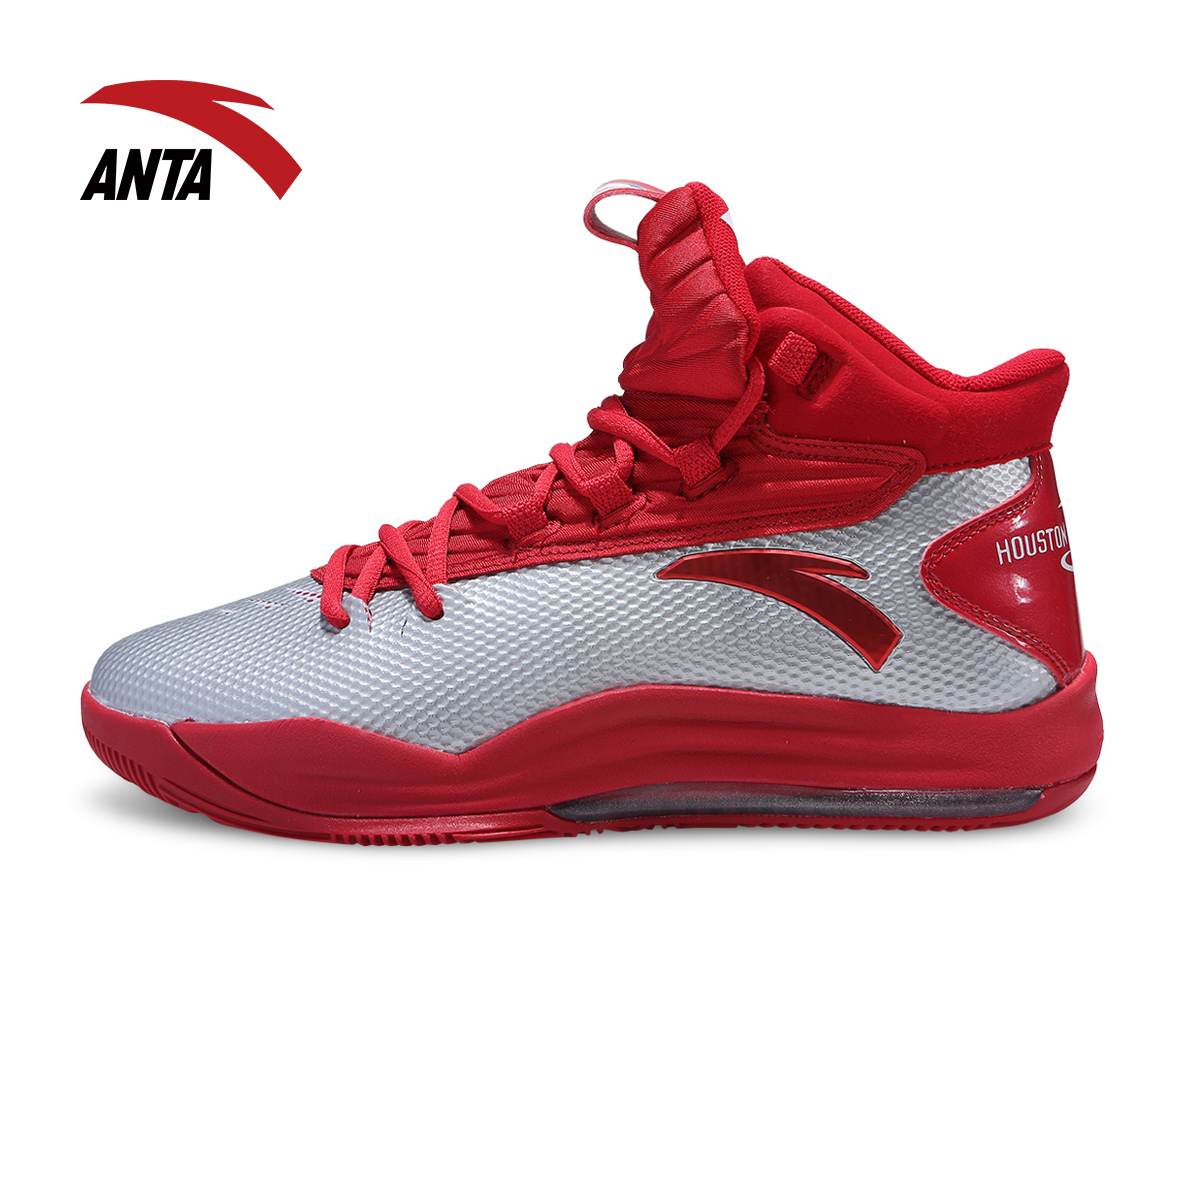 安踏篮球鞋 男鞋ANTA2014冬新款男子NBA篮球战靴|11441310